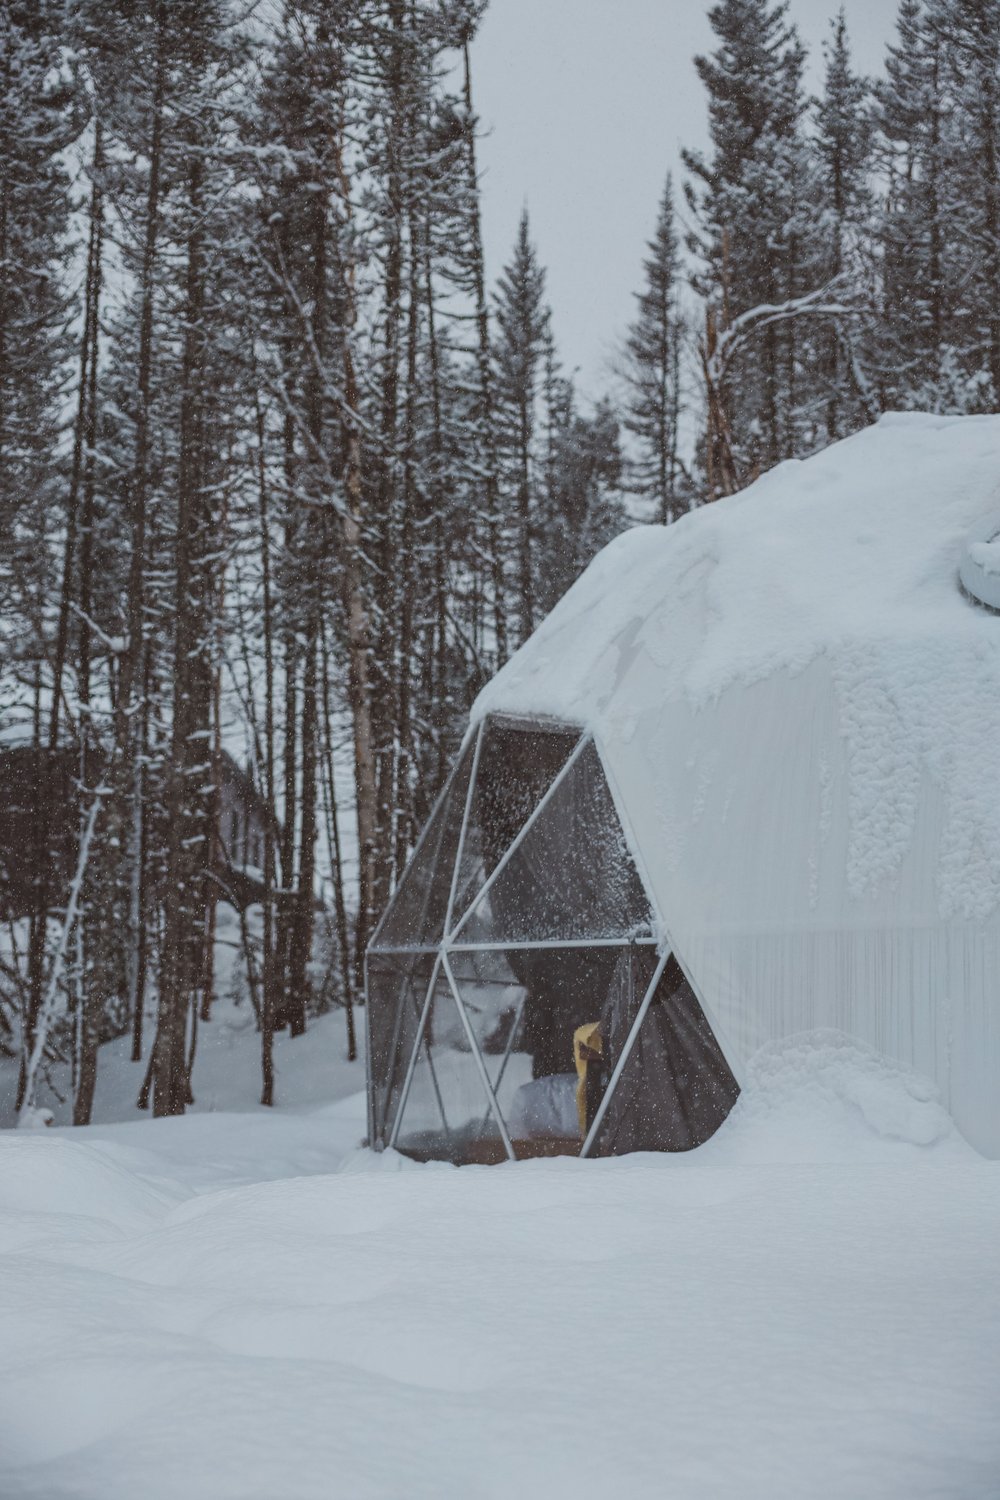 The igloo in winter - Diamants de l'Éternel - Saint-David-de-Falardeau - Saguenay-Lac-St-Jean - Quebec - Canada